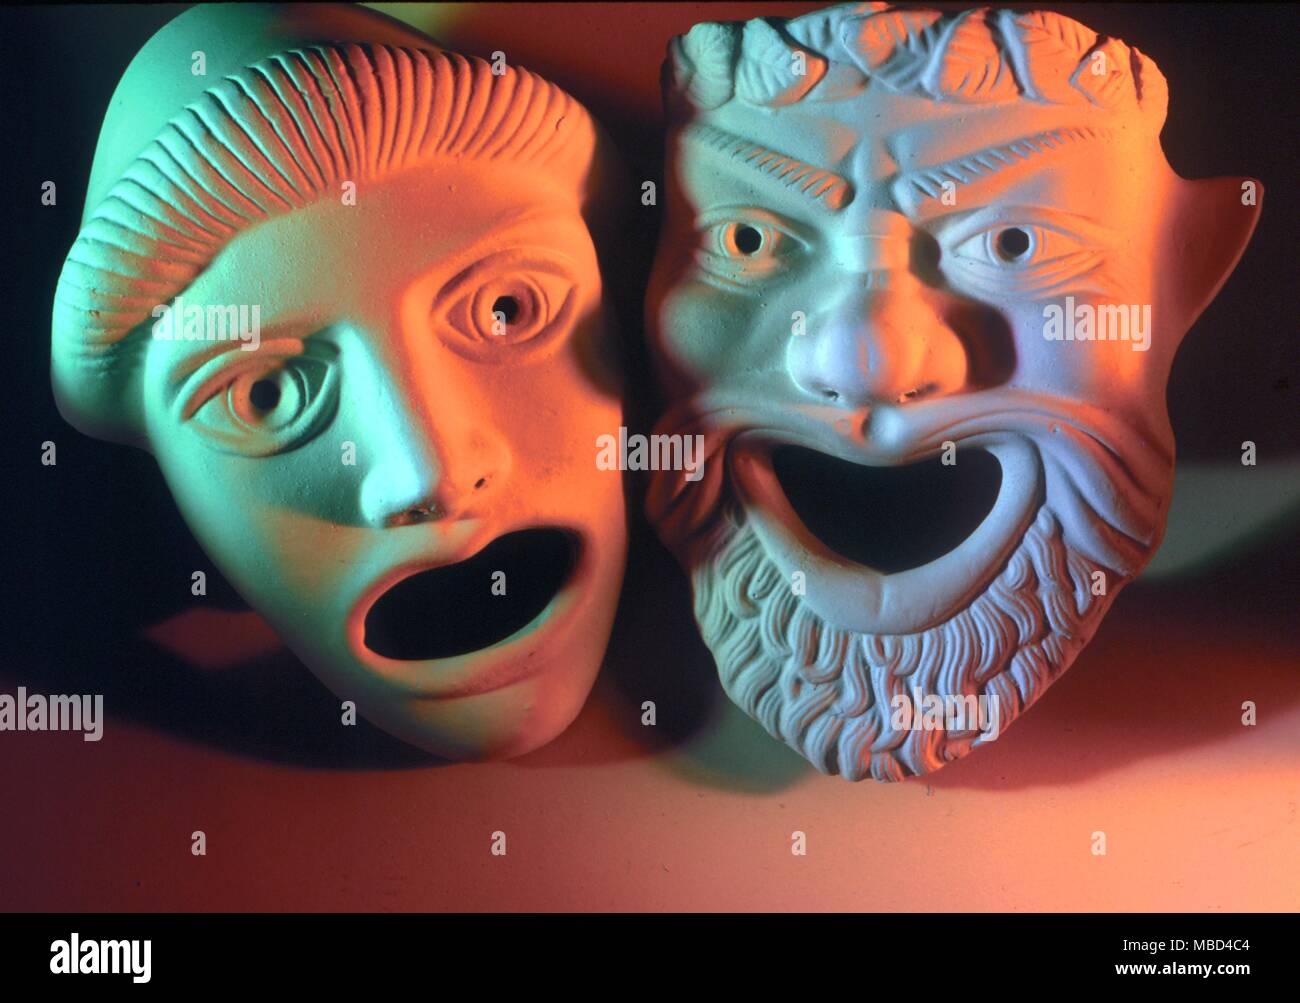 Máscaras - griego - un par de máscaras de actores de teatro de máscaras, sobre la base de antiguos originales griegos: a veces llamado comedia y tragedia. - © / Charles Walker Foto de stock